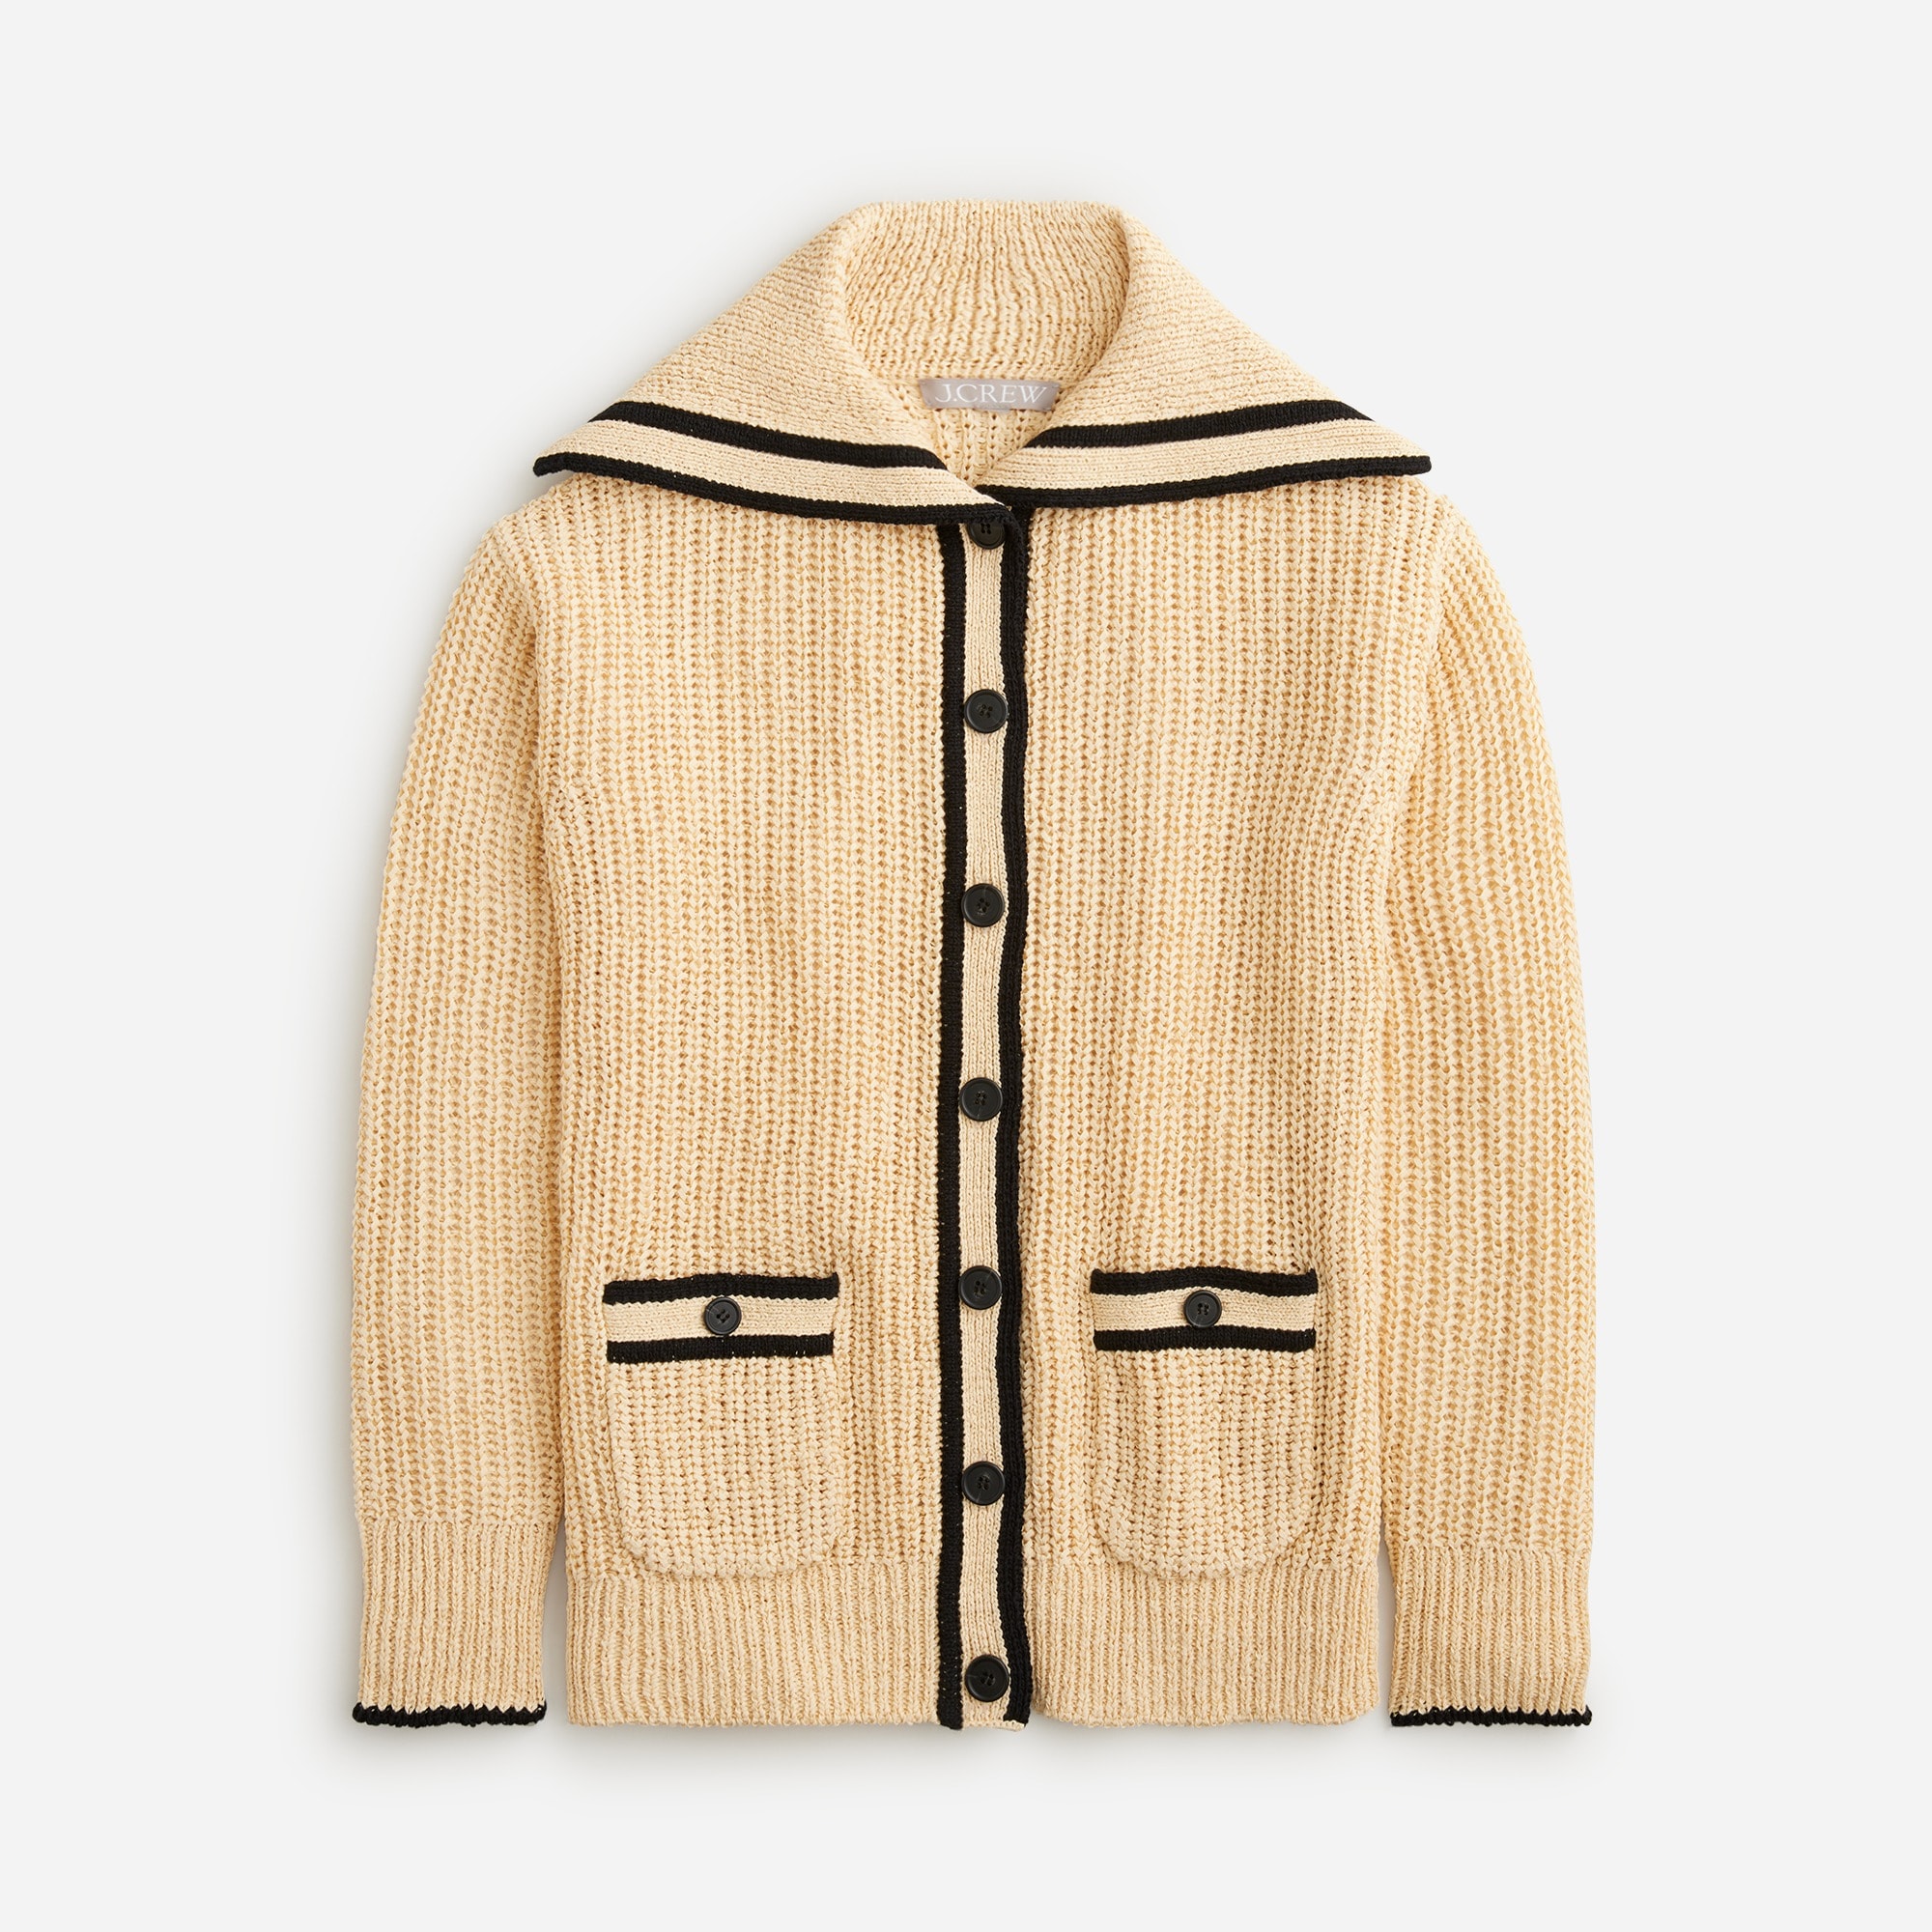  Textured sailor cardigan sweater